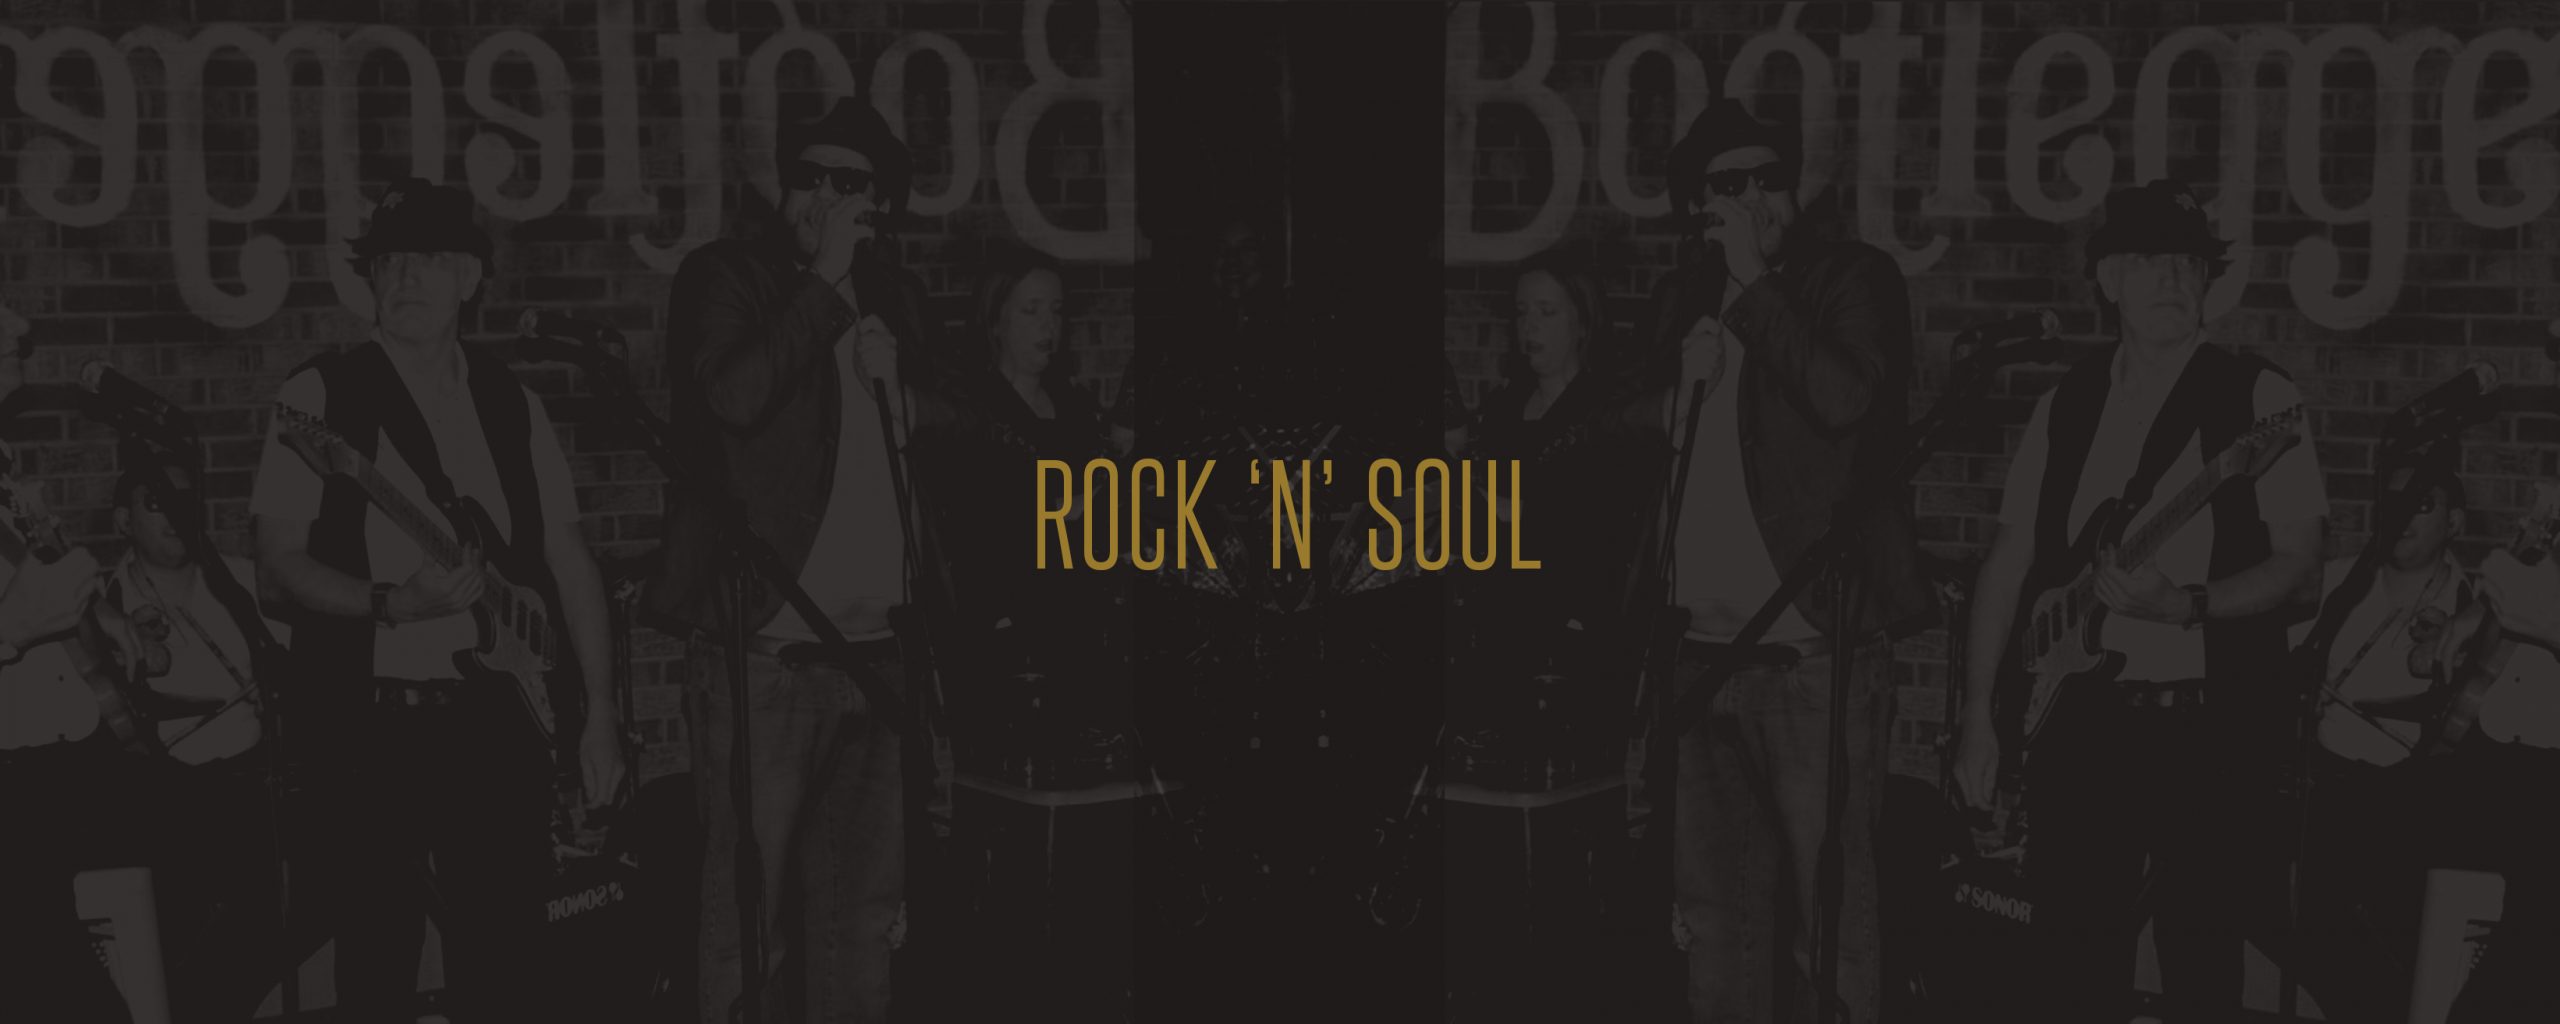 Rock 'N' Soul - Bootlegger Bars